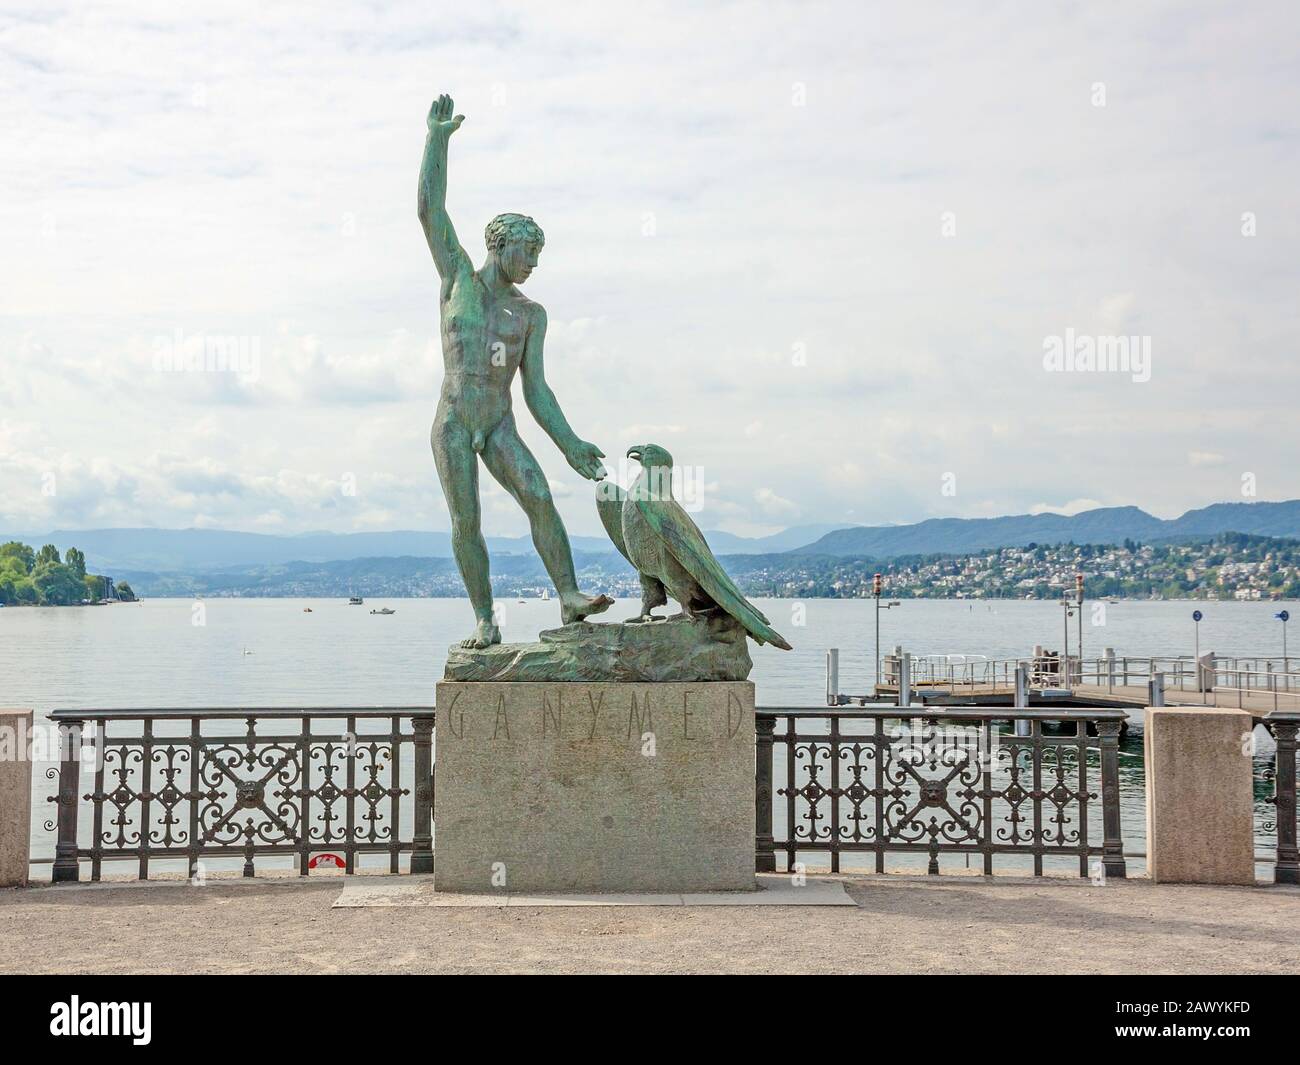 Zurigo, Svizzera - 10 giugno 2017: Statua di Ganymed (statua di un uomo e di un'aquila) a Zurigo, Svizzera - panorama del lago di Zurigo sullo sfondo Foto Stock